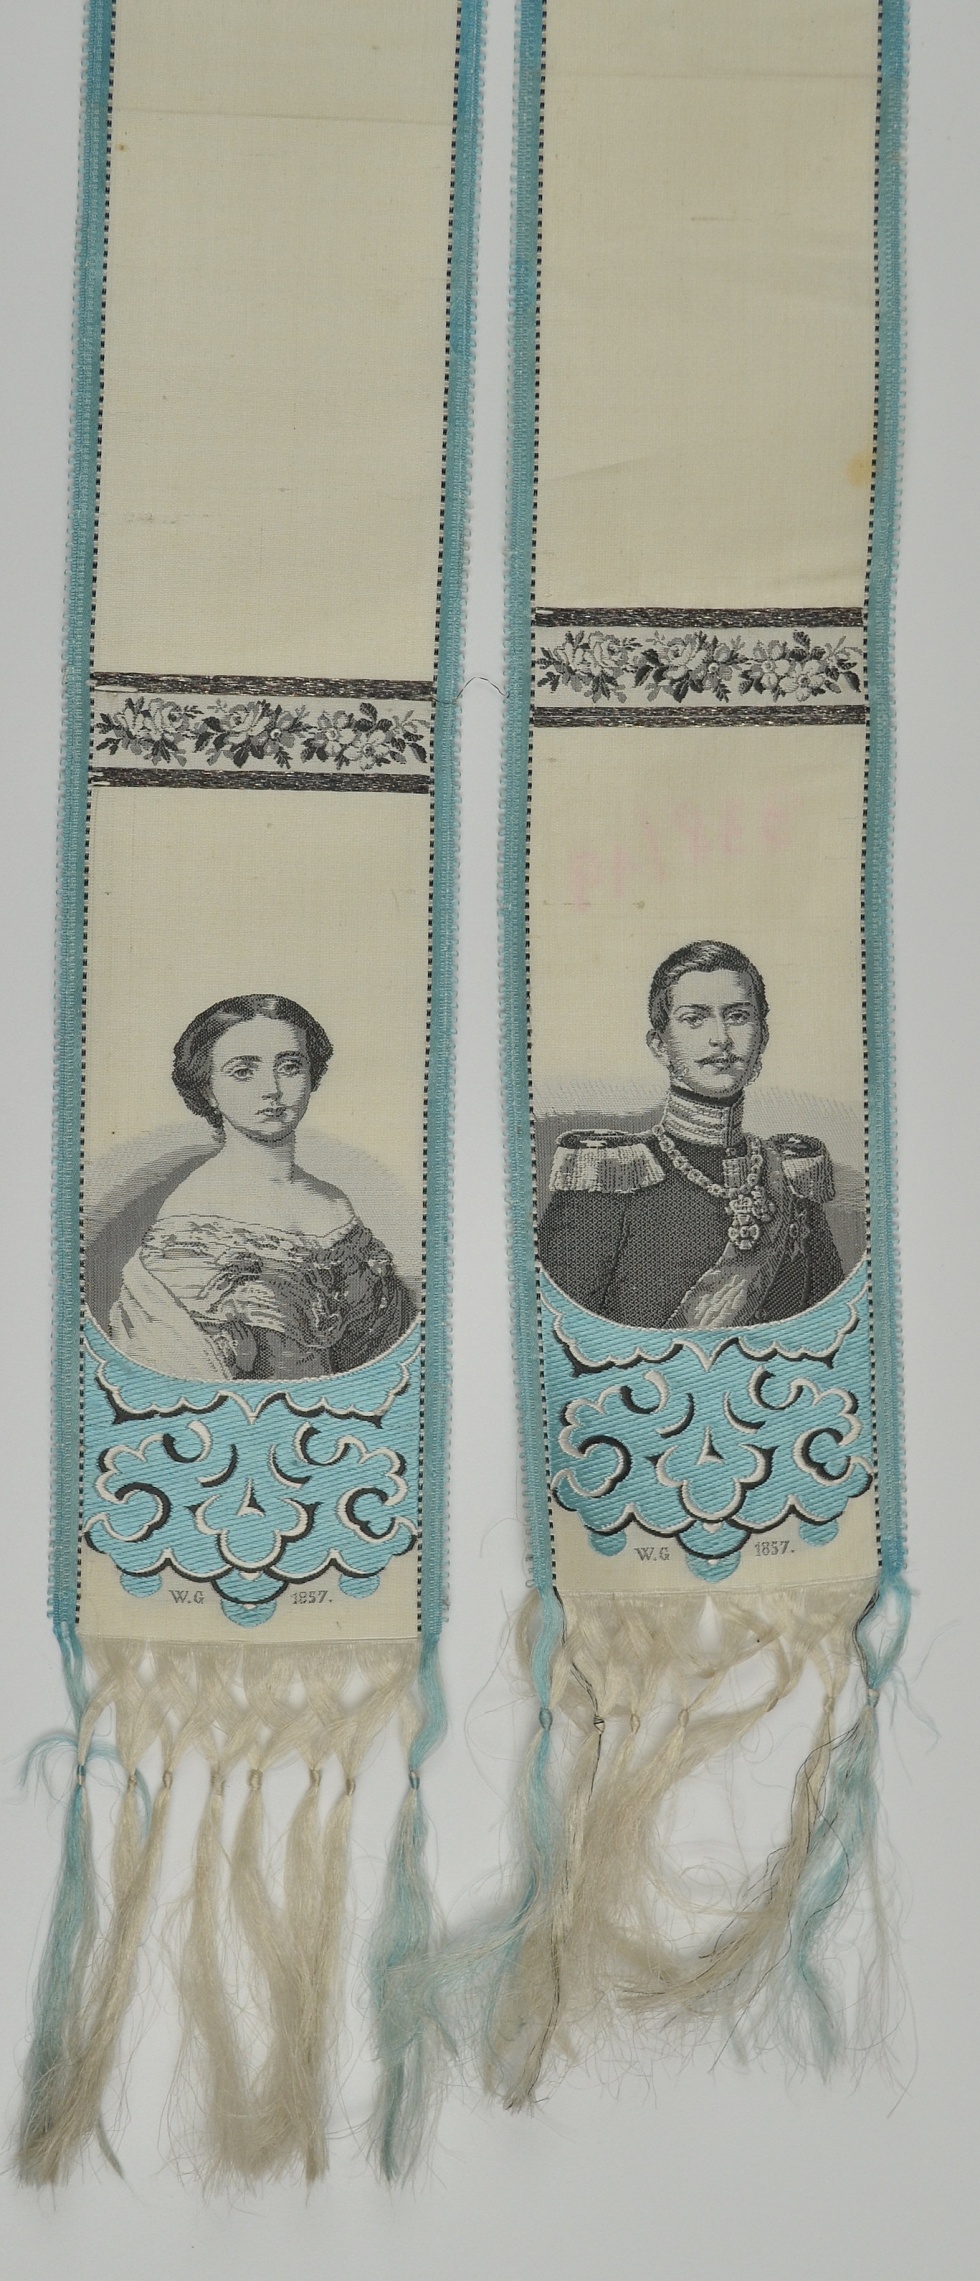 Vivatband von Wilhelm dem I. und seiner Verlobten 1857 (Museum Weißenfels - Schloss Neu-Augustusburg CC BY-NC-SA)